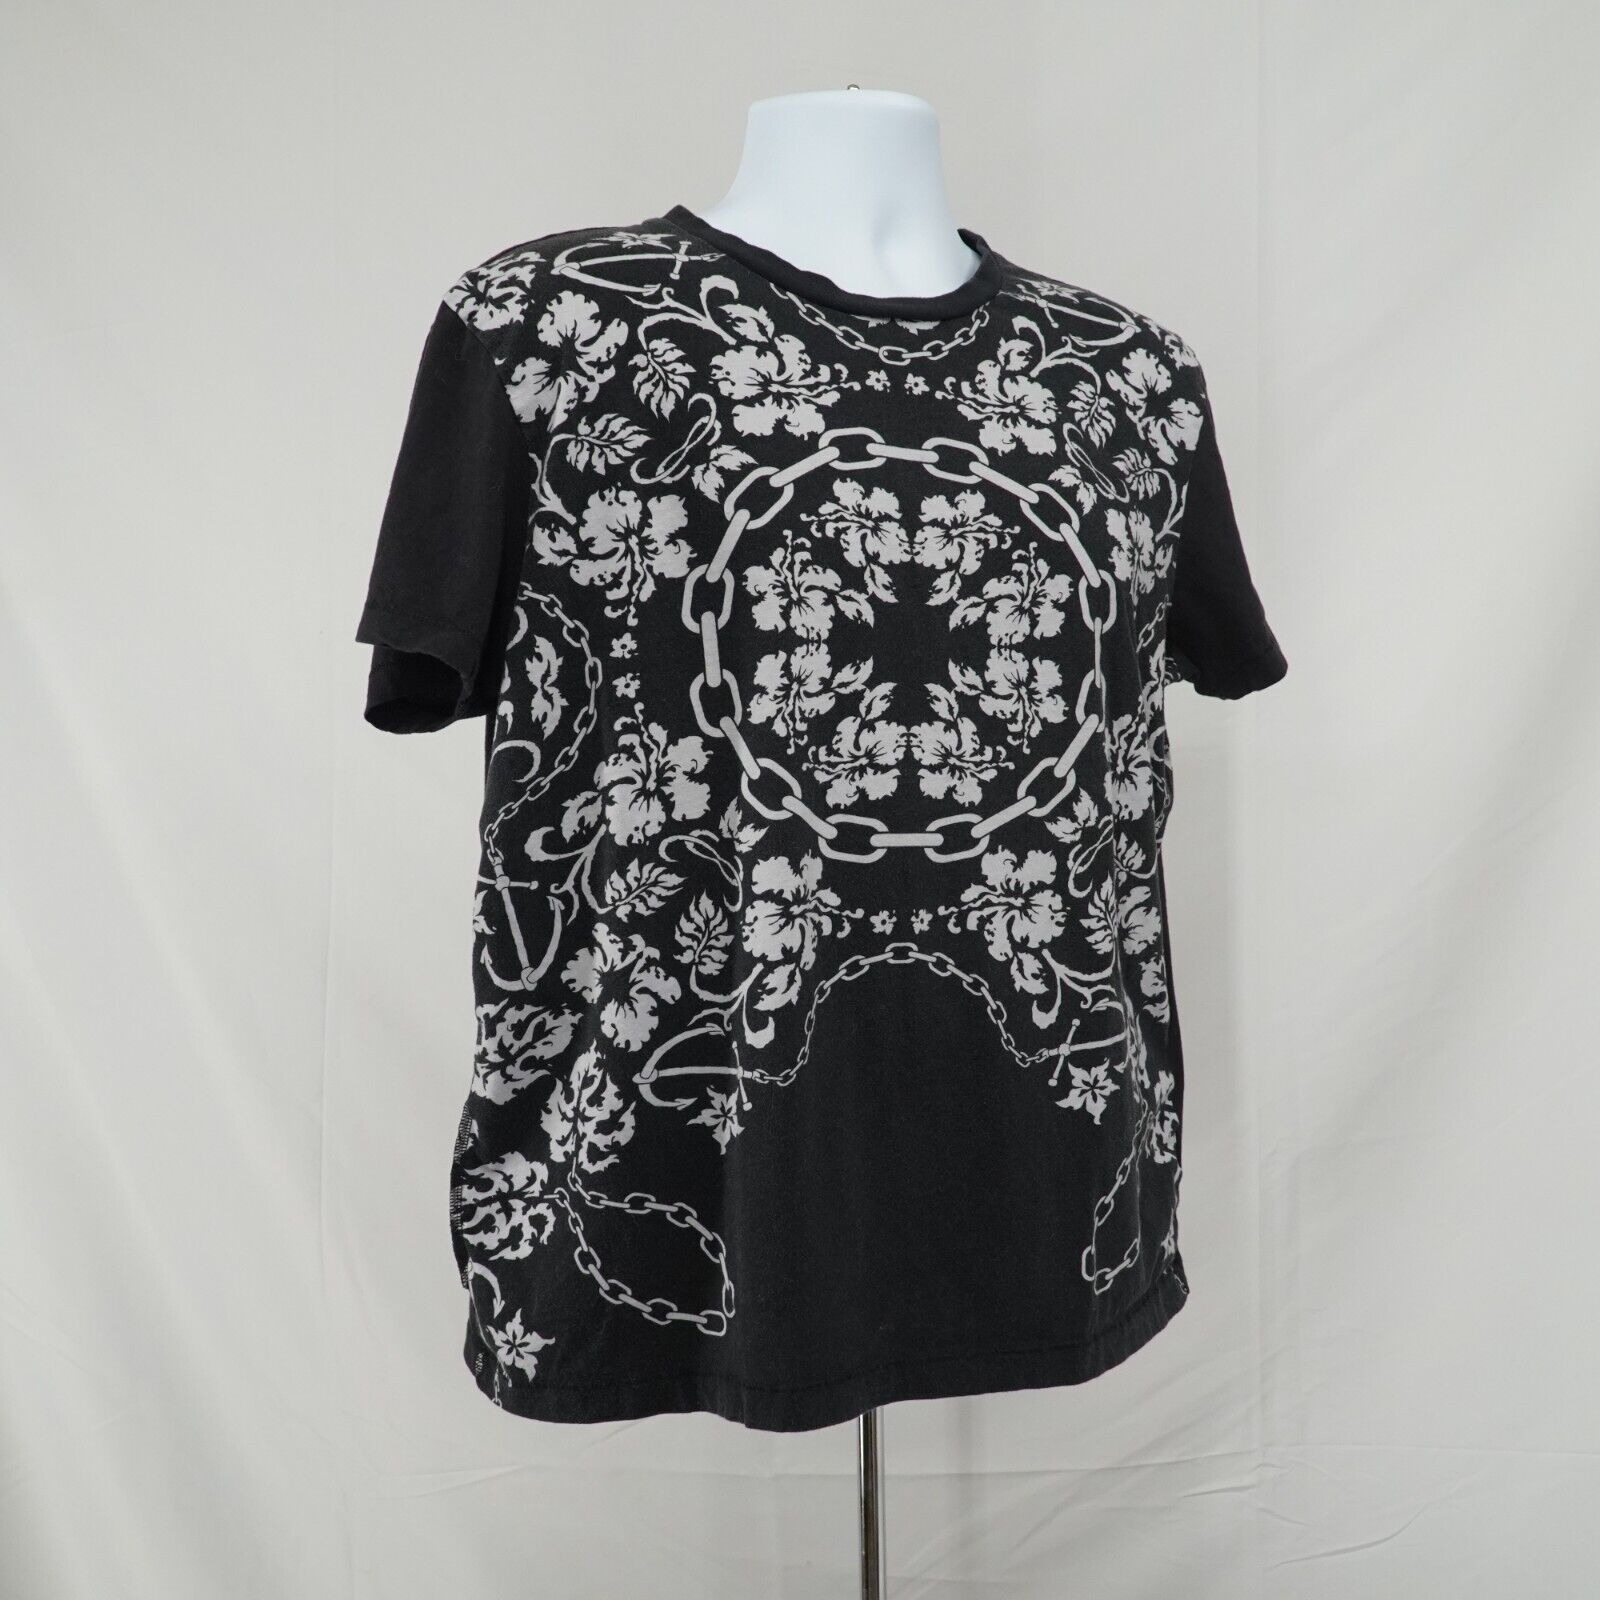 Black White Printed Shirt Floral Chains Anchor Hawaiian Tee - 15